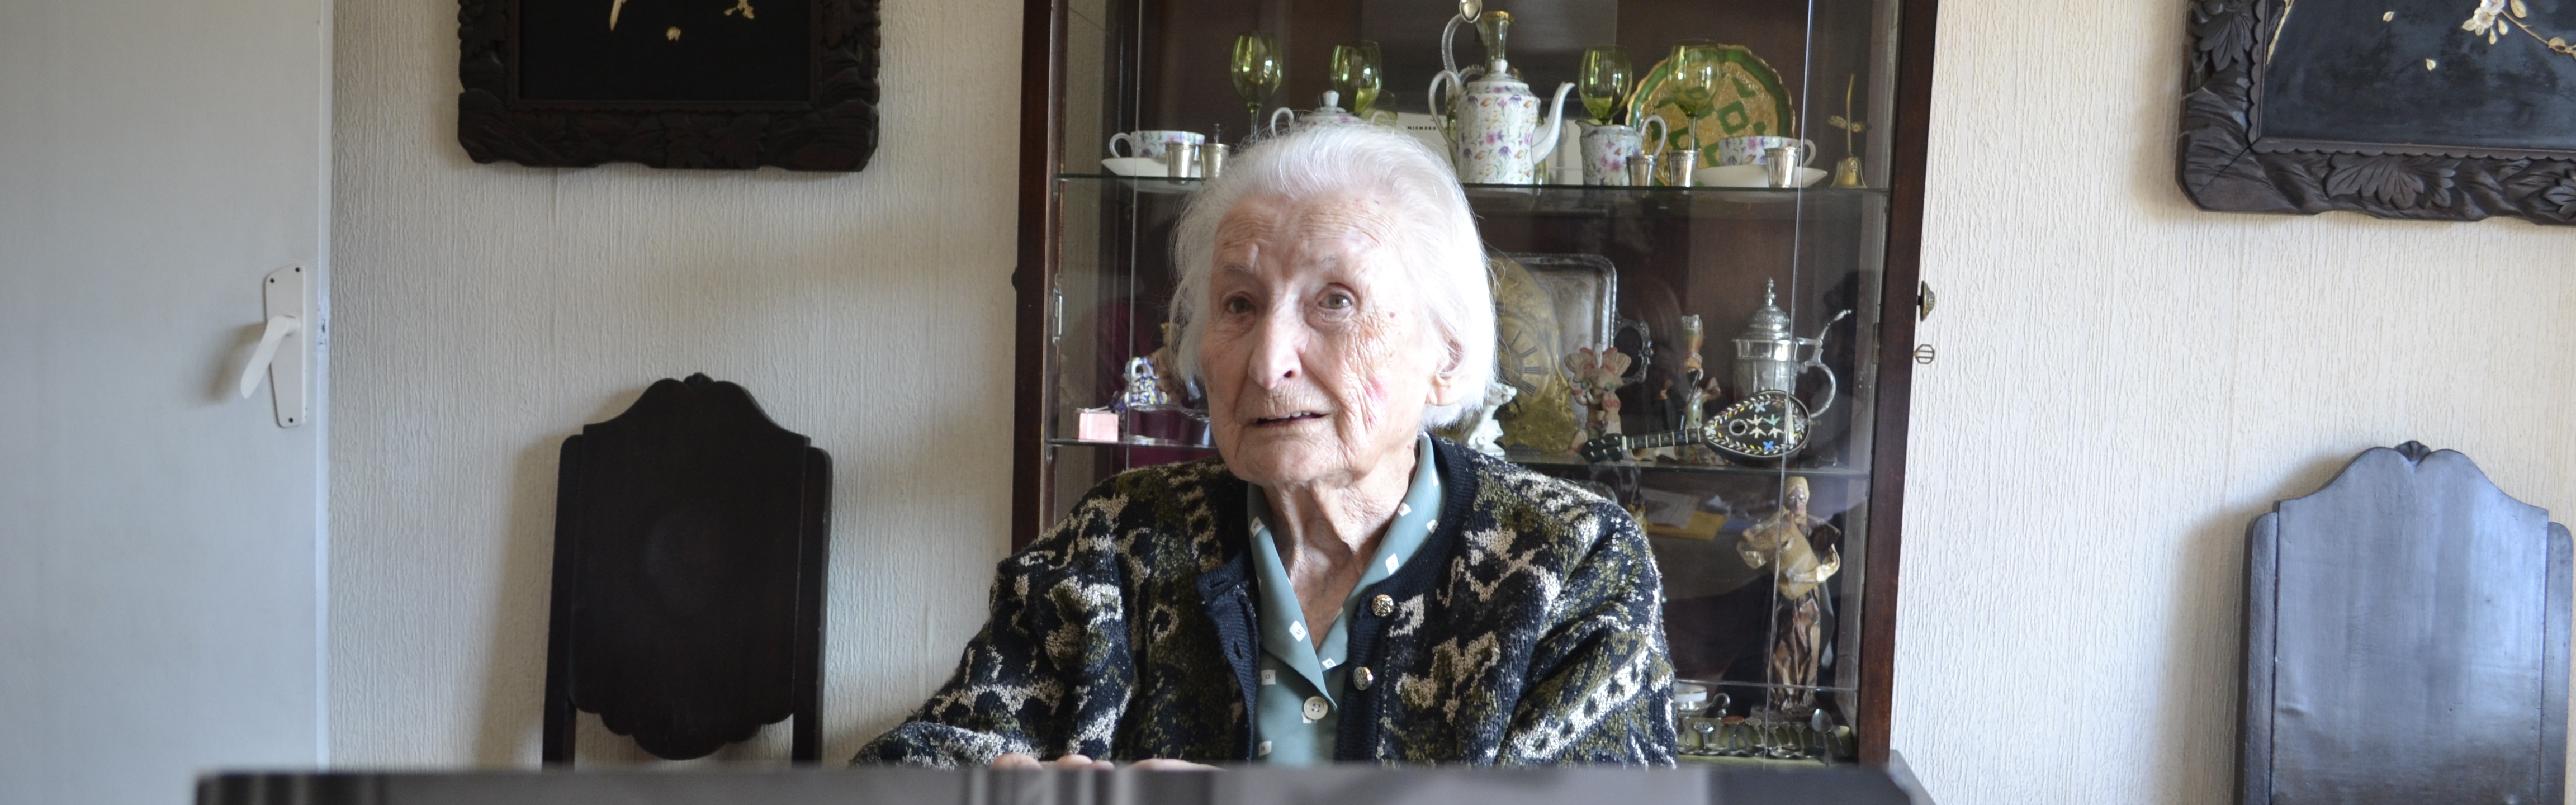 Fallece, a los 101 años, Margarita Zielinski Picquoin, la mujer que revolucionó la enseñanza de los idiomas en la Universidad de Murcia